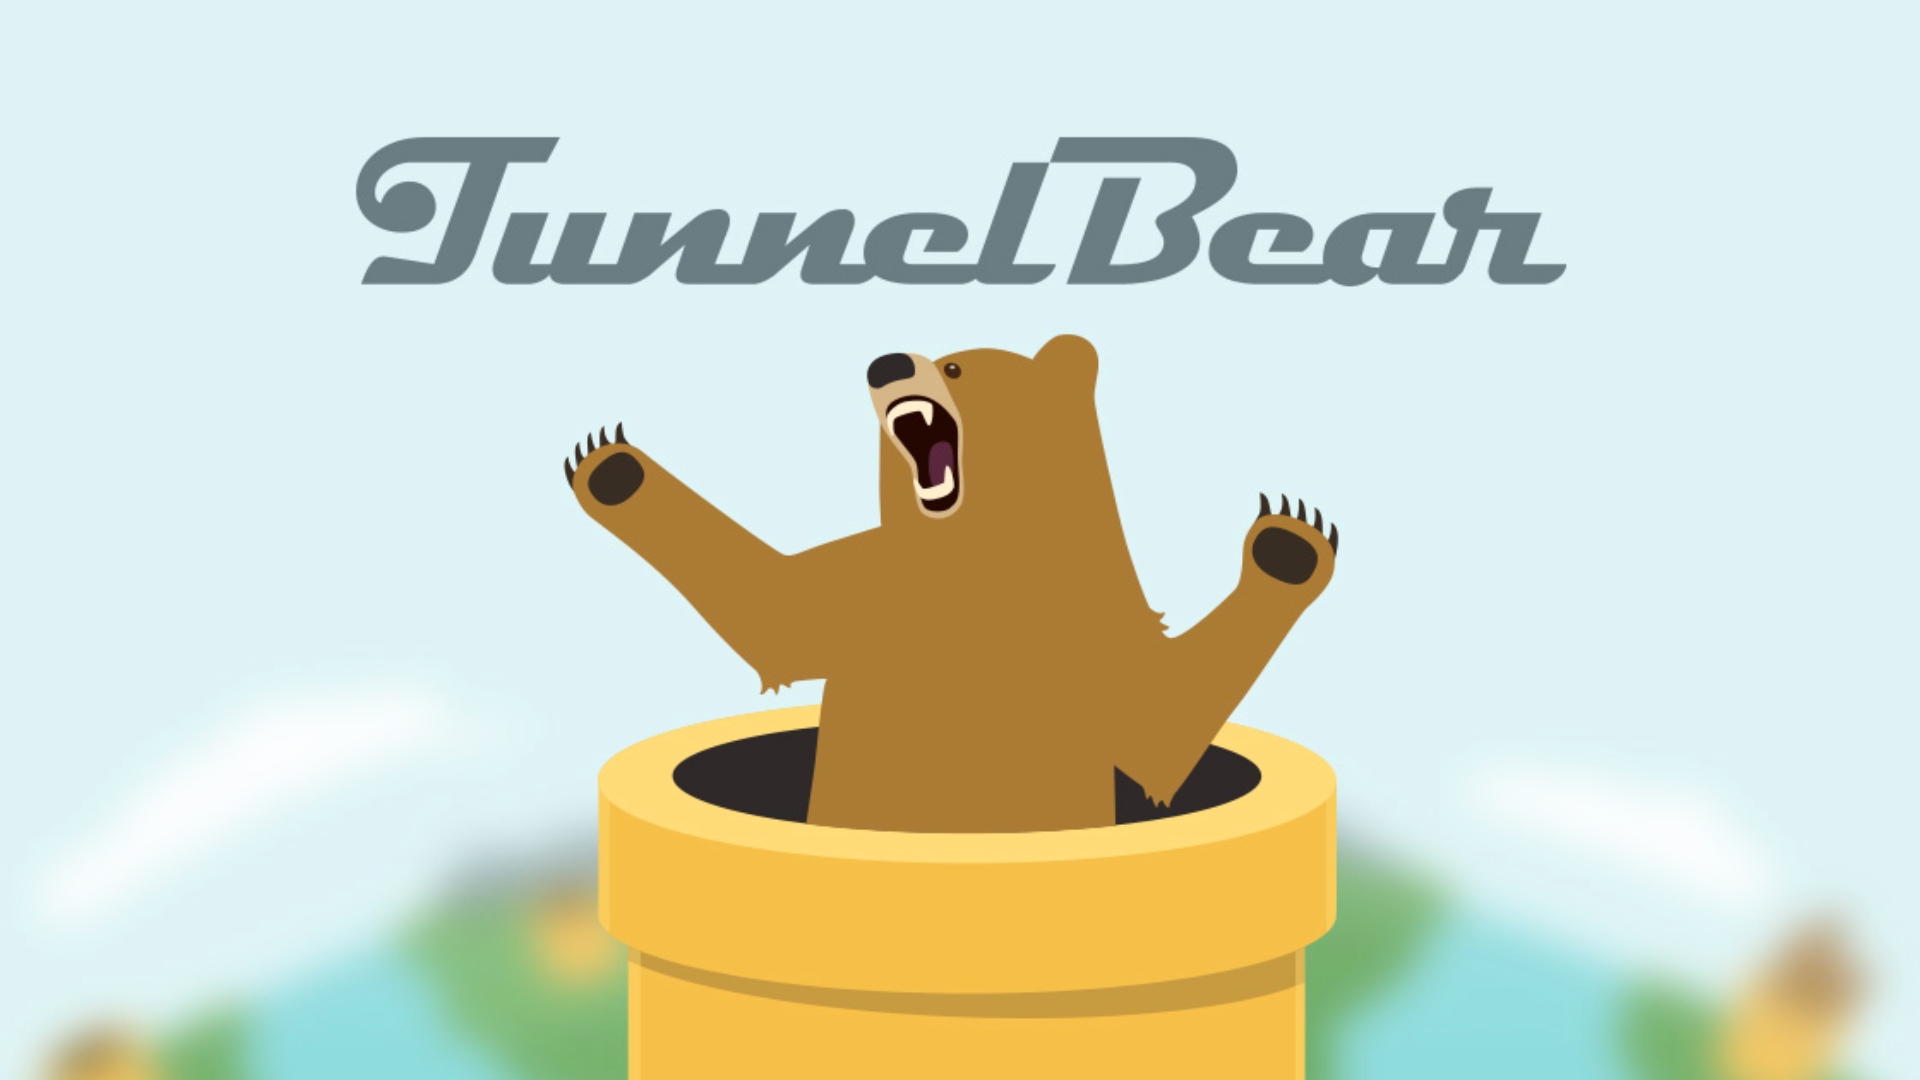 Najlepsze aplikacje VPN: TunnelBear.  Zdjęcie przedstawia niedźwiedzia wyłaniającego się z czegoś, co wygląda jak fajka pod logo TunnelBear.